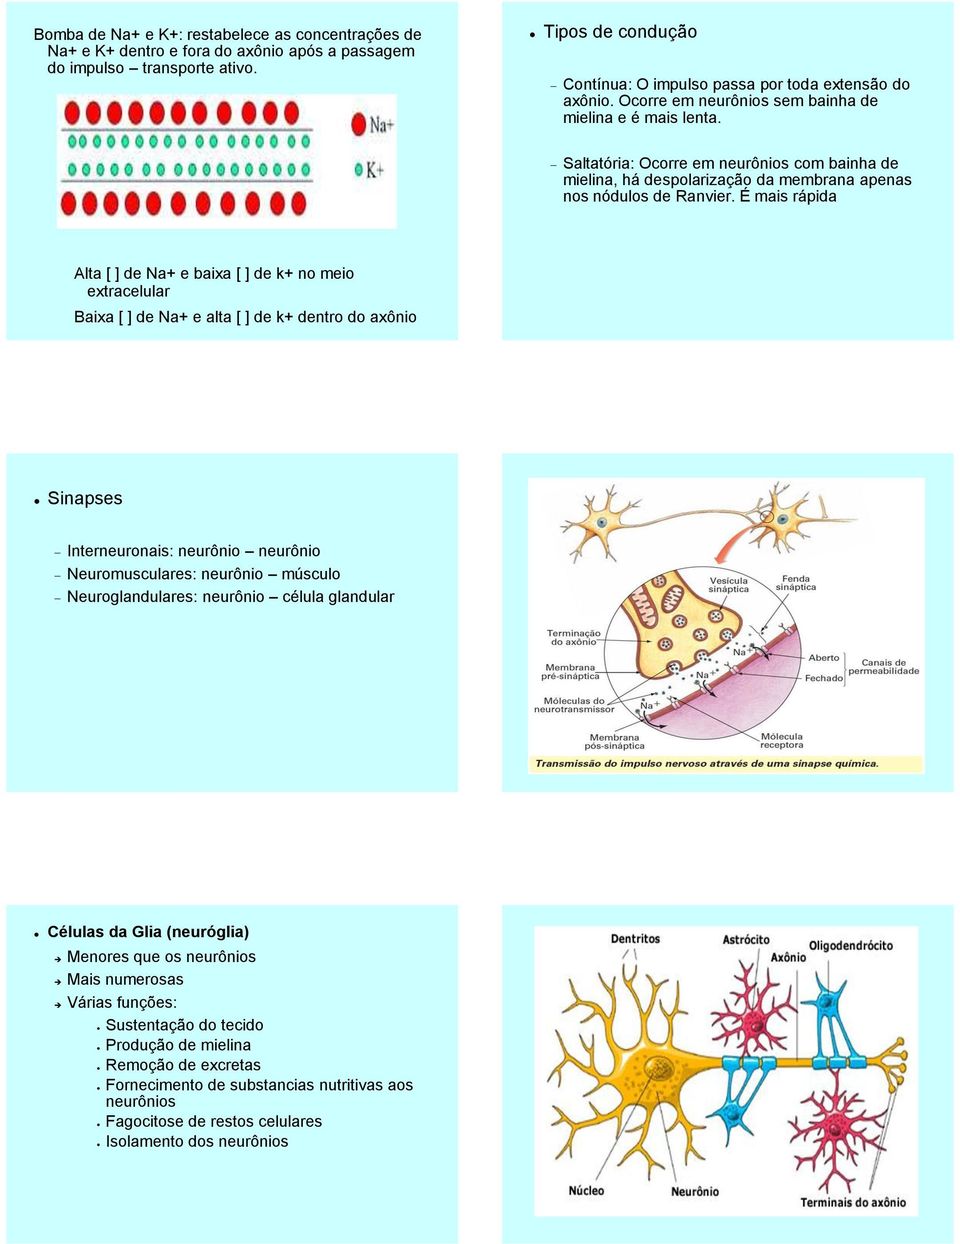 Saltatória: Ocorre em neurônios com bainha de mielina, há despolarização da membrana apenas nos nódulos de Ranvier.